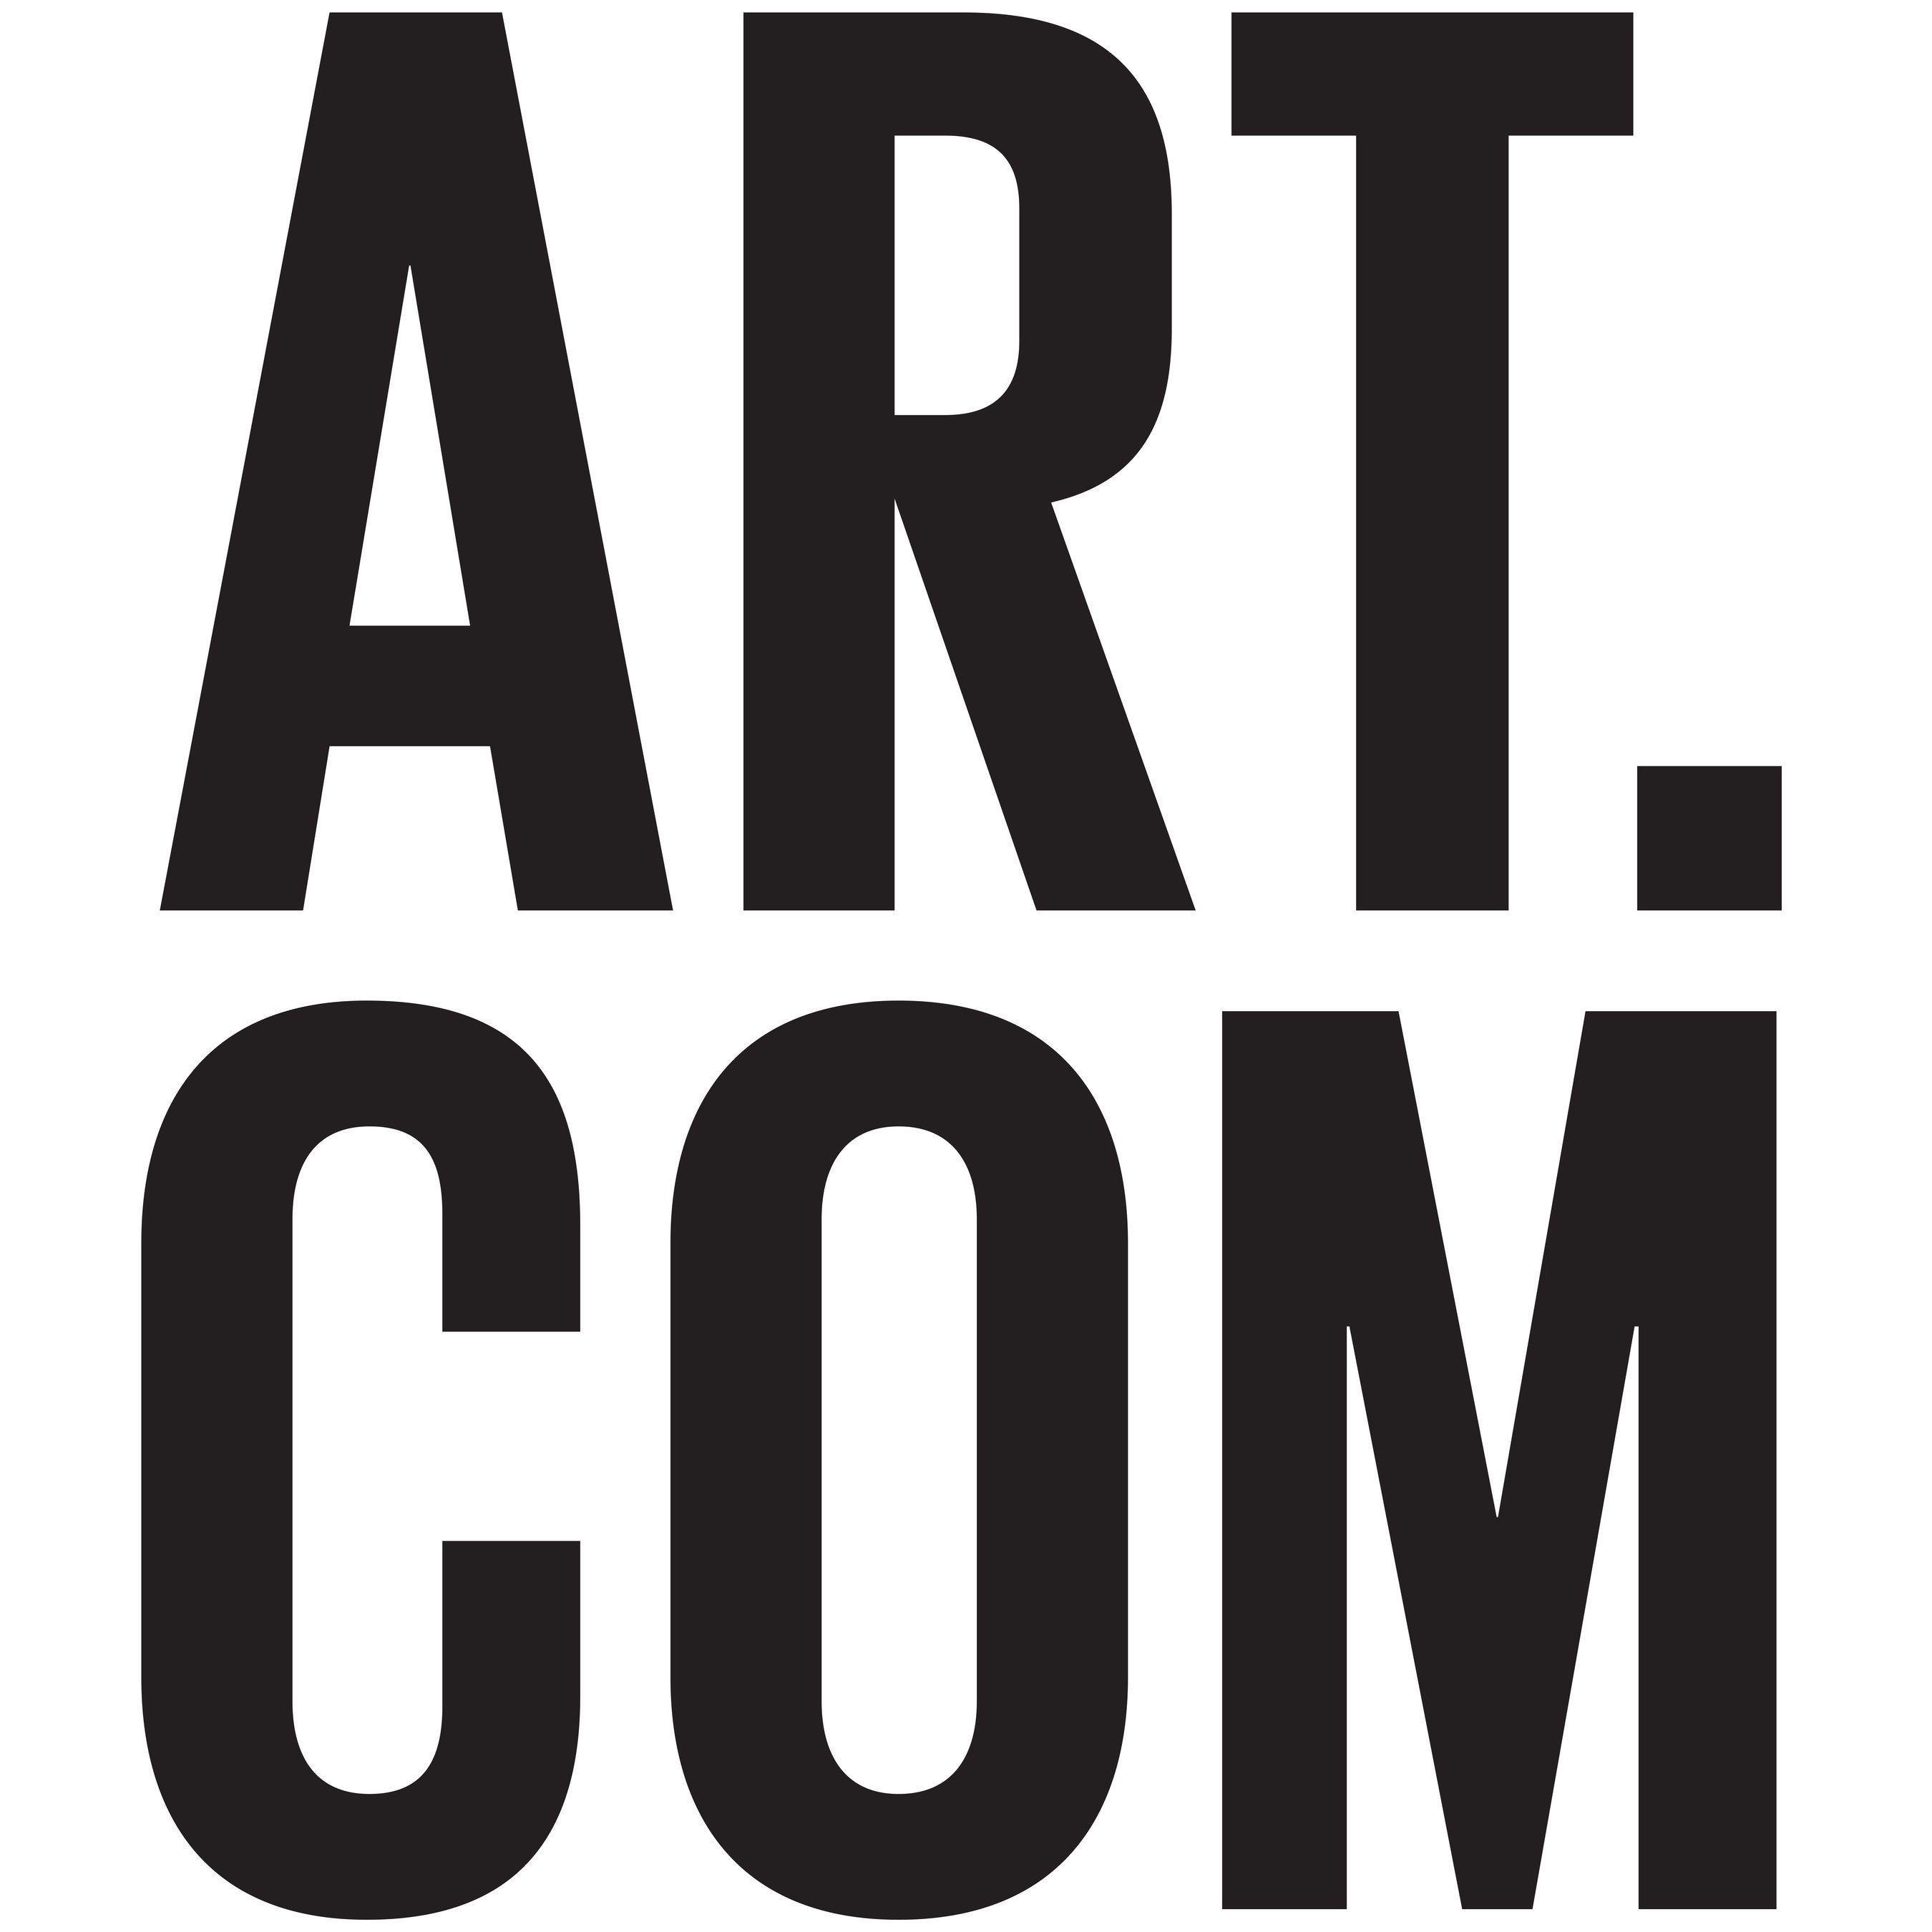 Ceo.com Logo - Art.com Inc. Appoints Kira Wampler as CEO